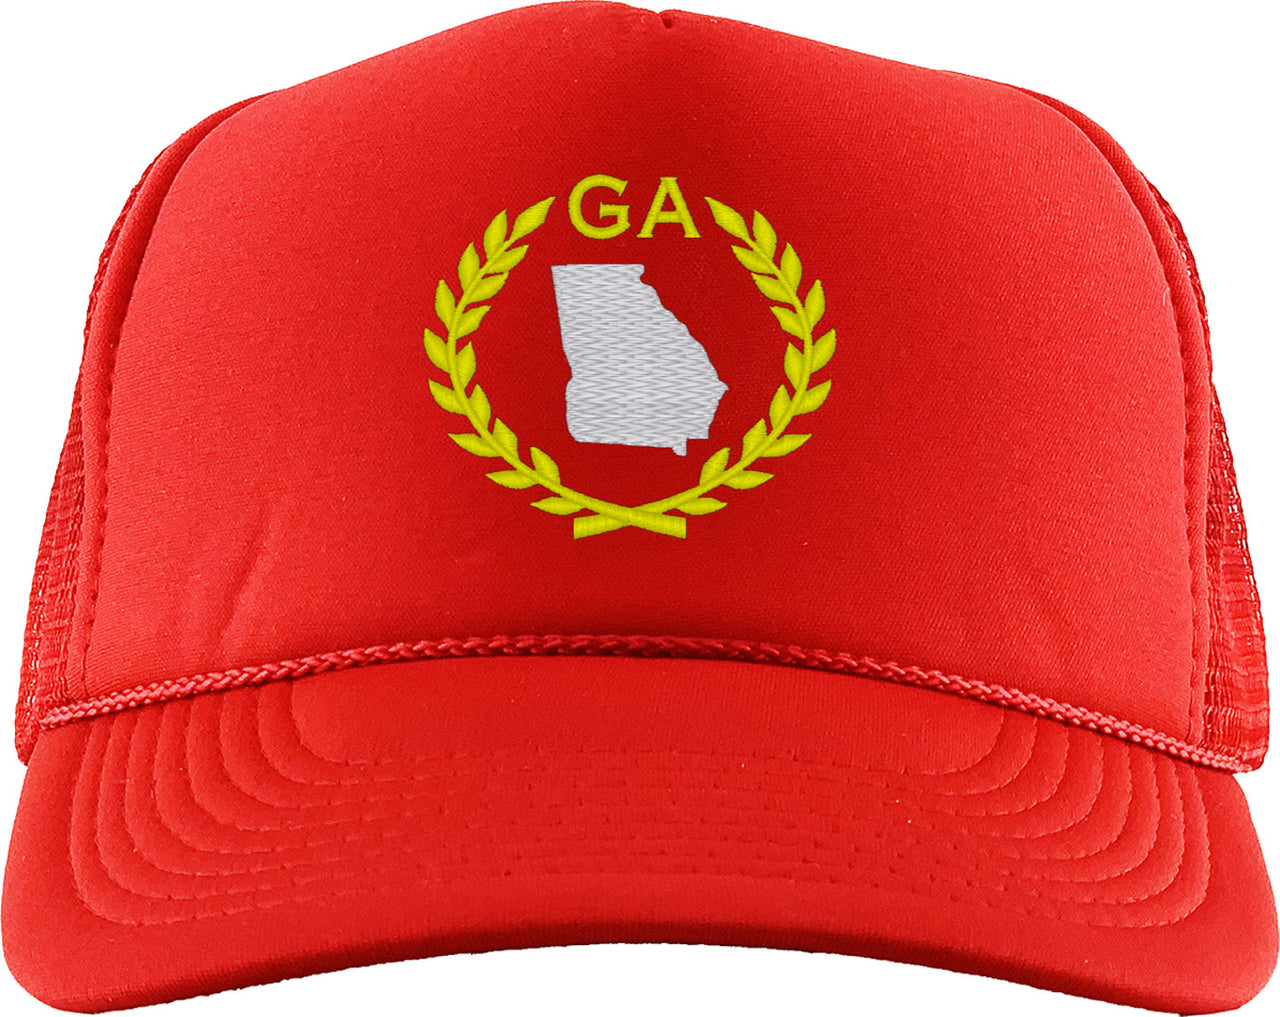 Georgia State Foam Trucker Hat